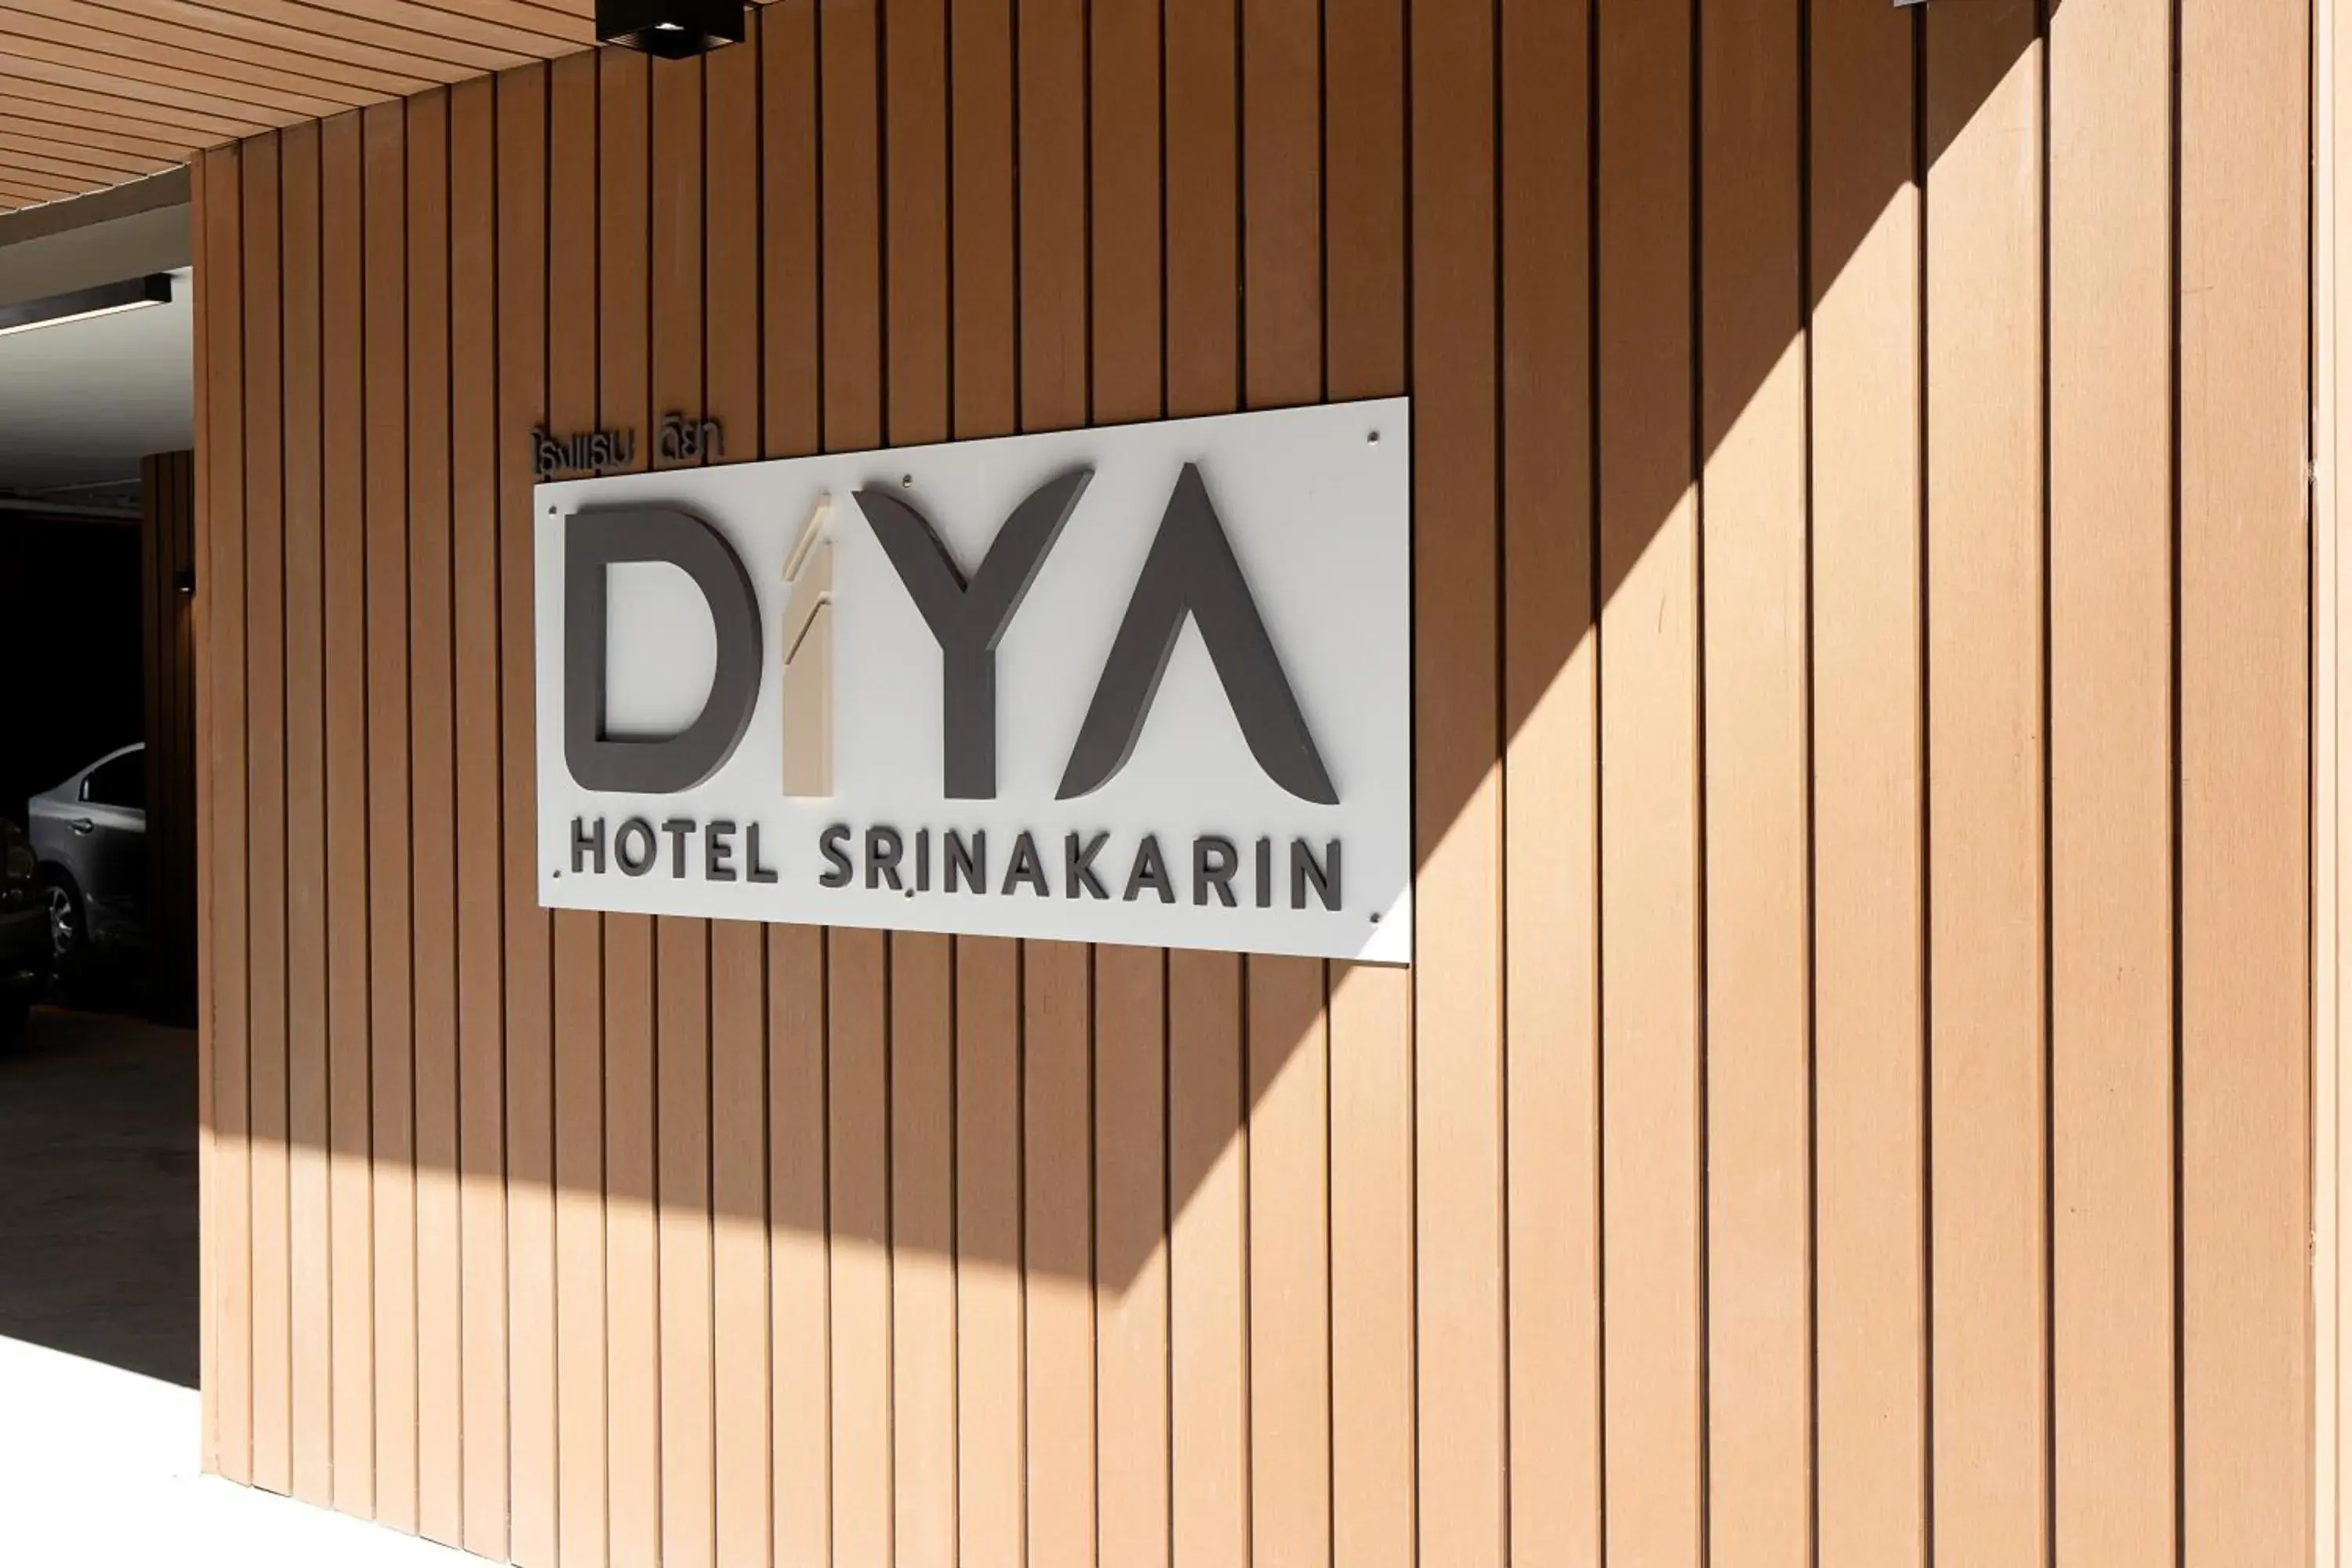 Property logo or sign in Diya Hotel Srinakarin